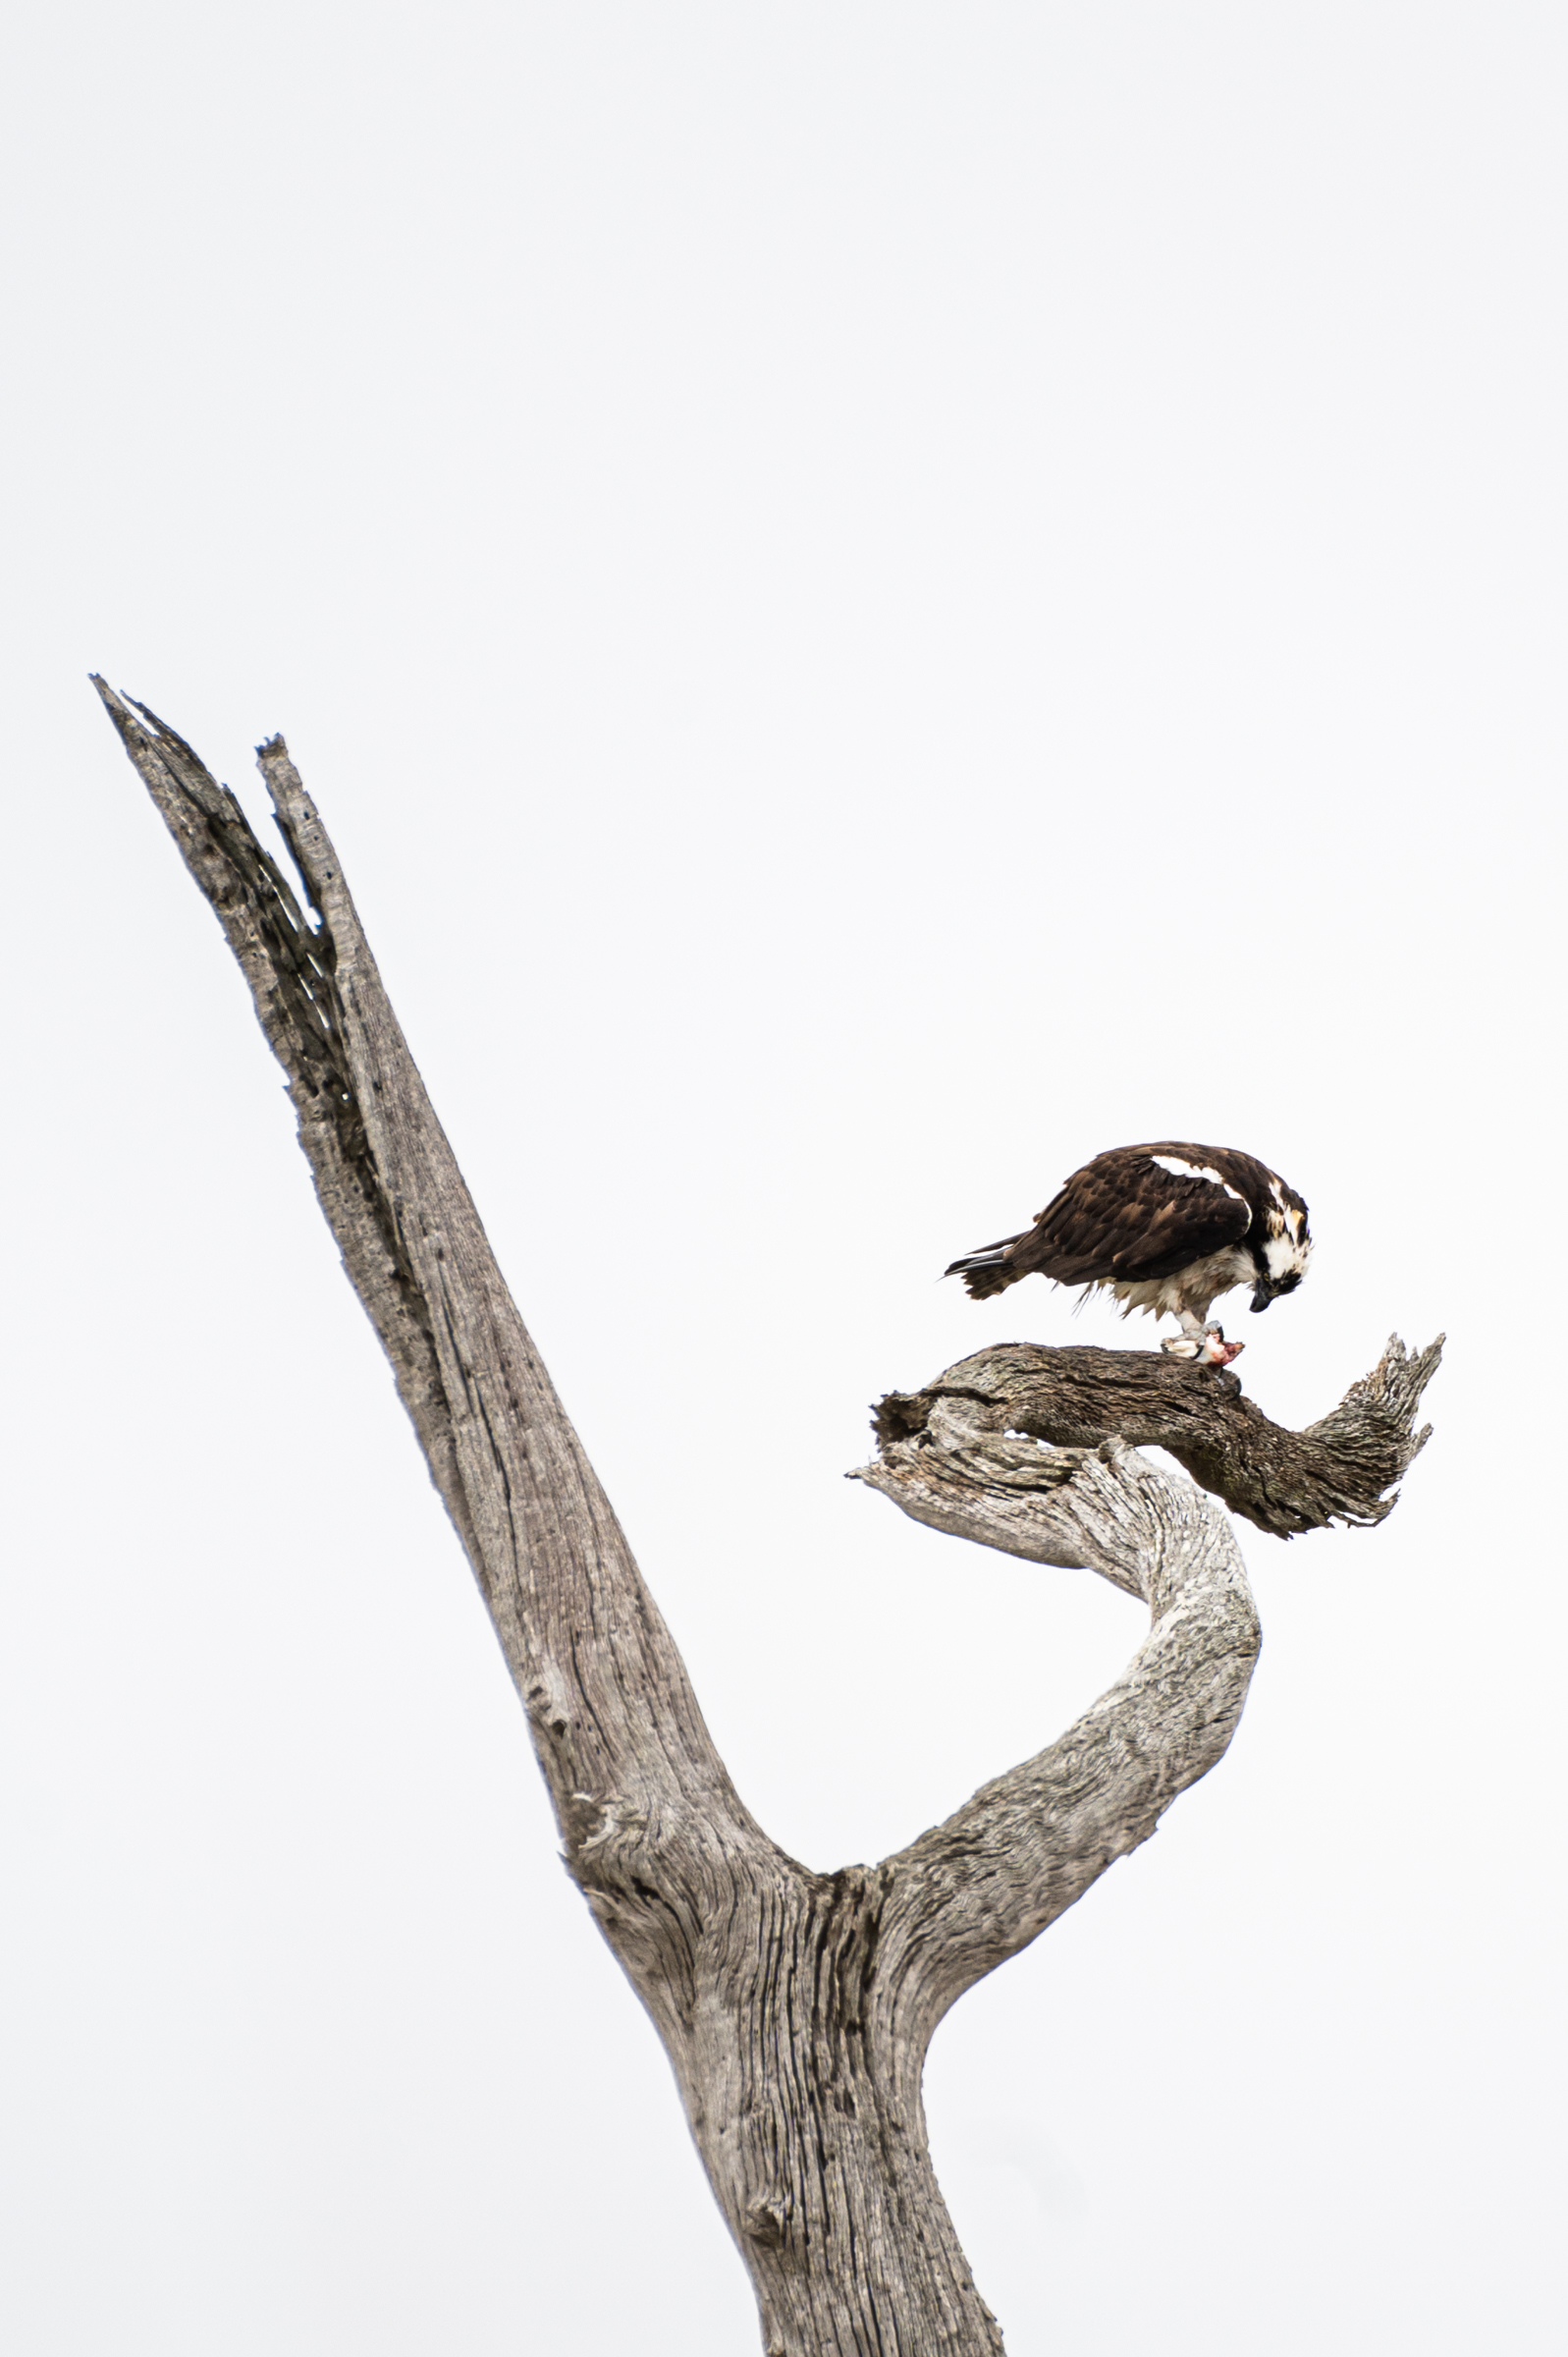 An osprey feeding on speckled trout in a ghost oak tree